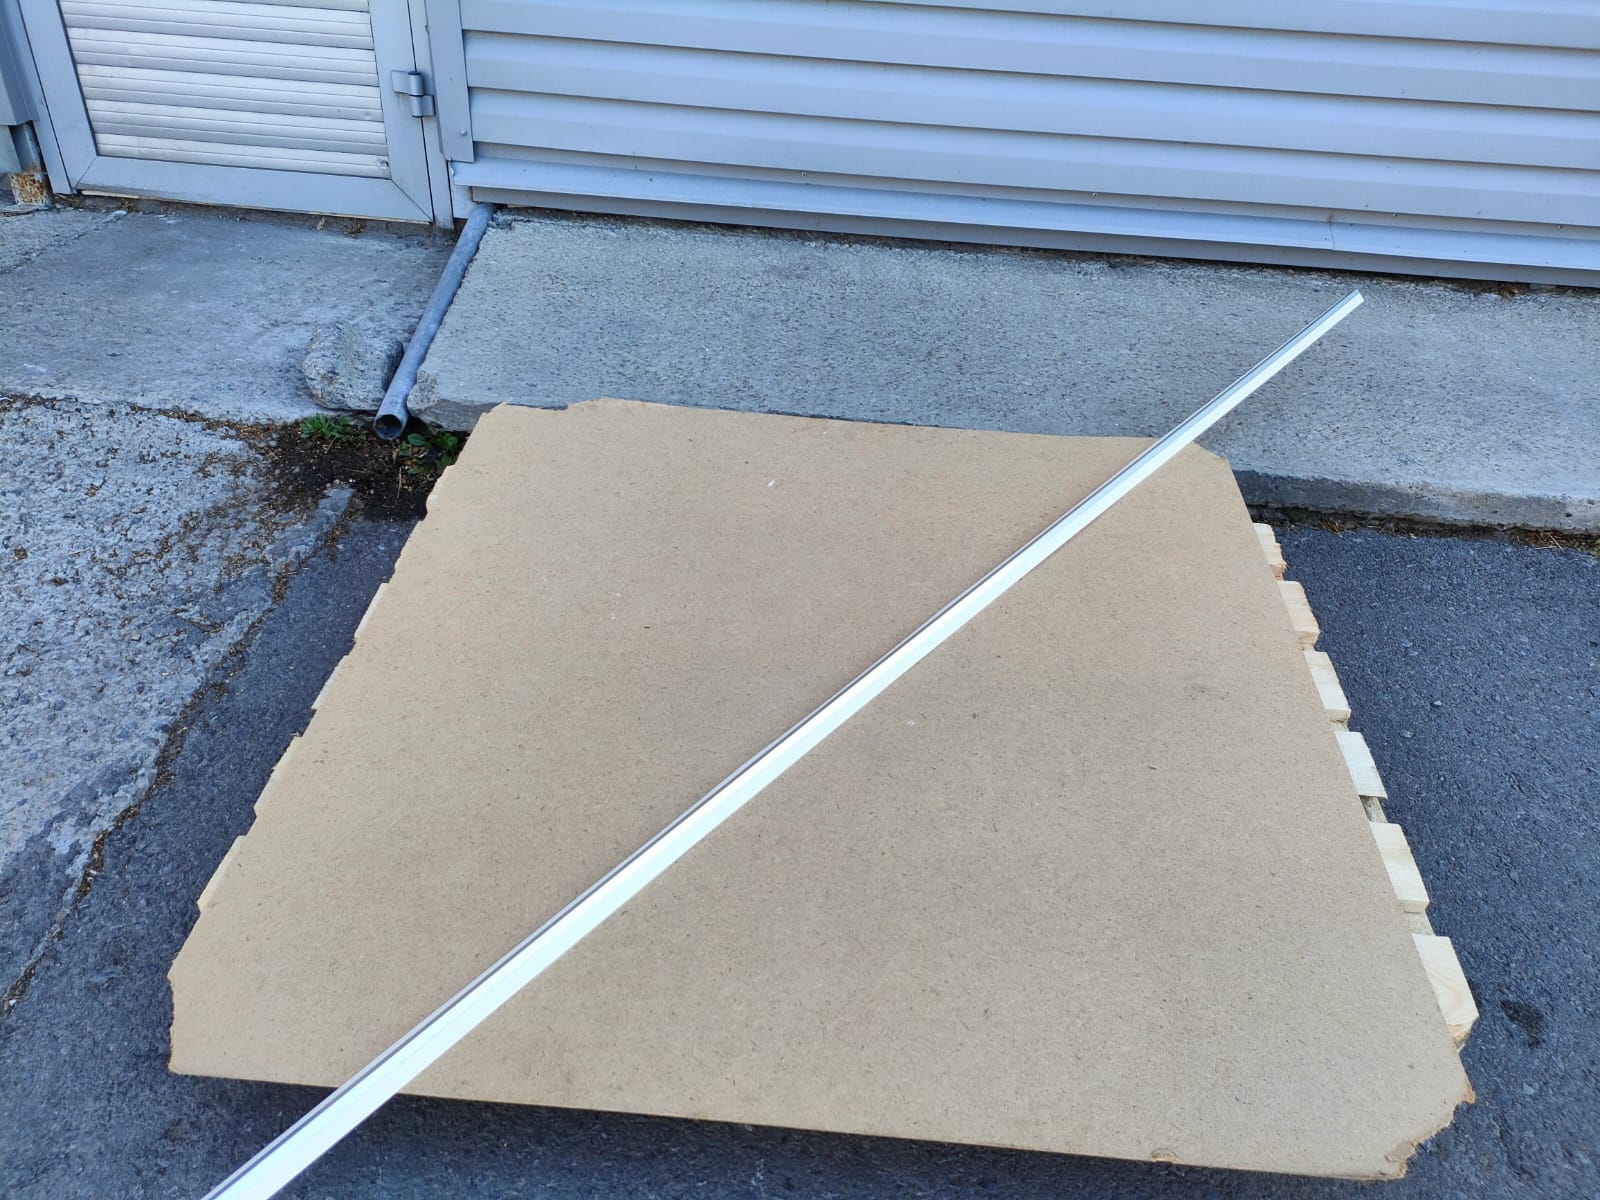 Металлизированный уголок sheetrock (Шитрок) на бумажной основе для внутренних углов 3,05 м